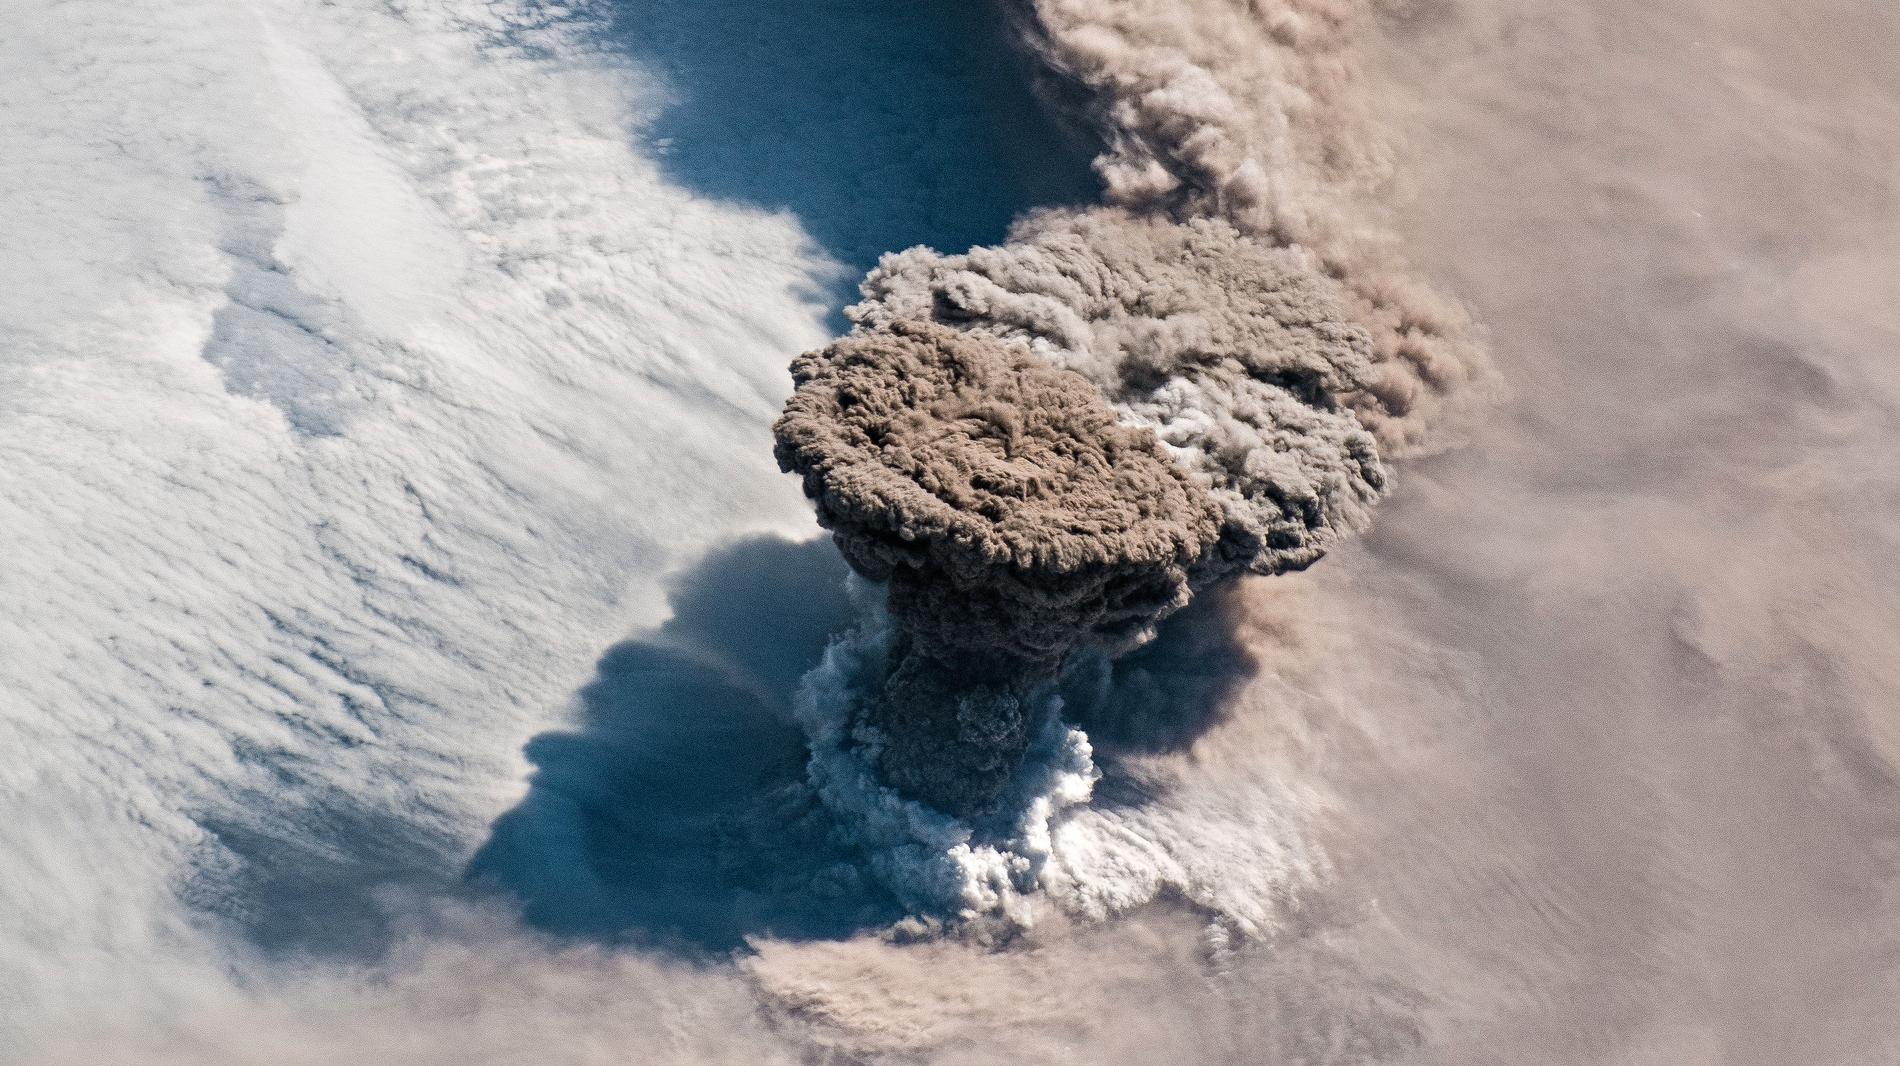 Den 22 juni fick vulkanen Raikoke på den ryska ögruppen Kurilerna ett utbrott. Resultatet blev en rökplym som sträckte sig 17 kilometer upp i stratosfären – och lila solnedgångar.